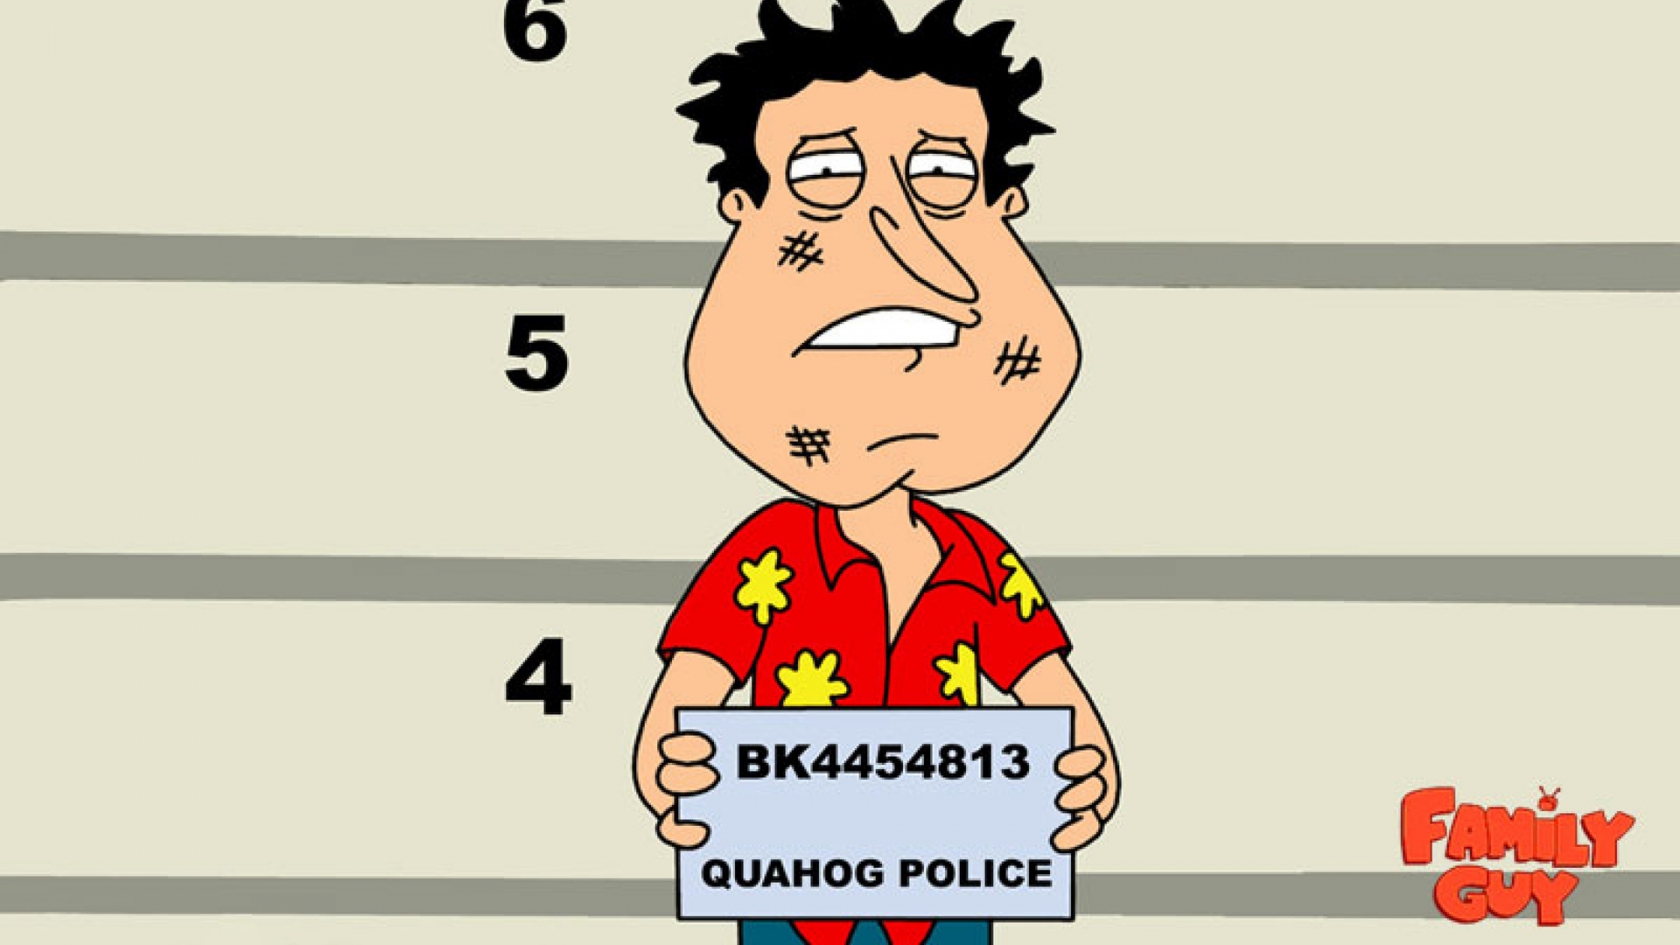 Family Guy Quagmire for 1680 x 945 HDTV resolution